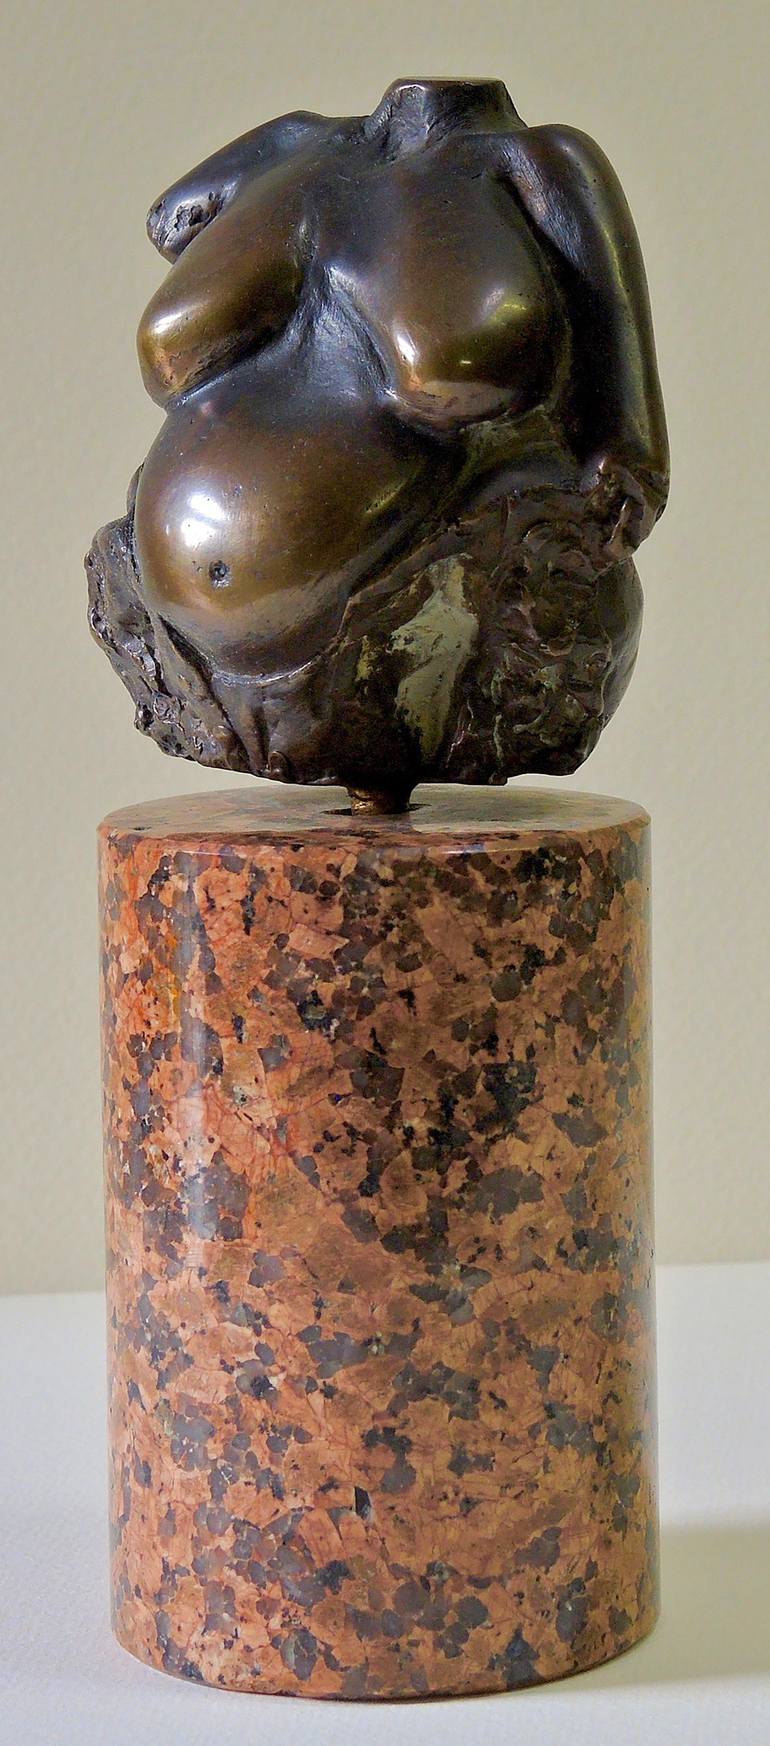 Original Nude Sculpture by bolek markowski